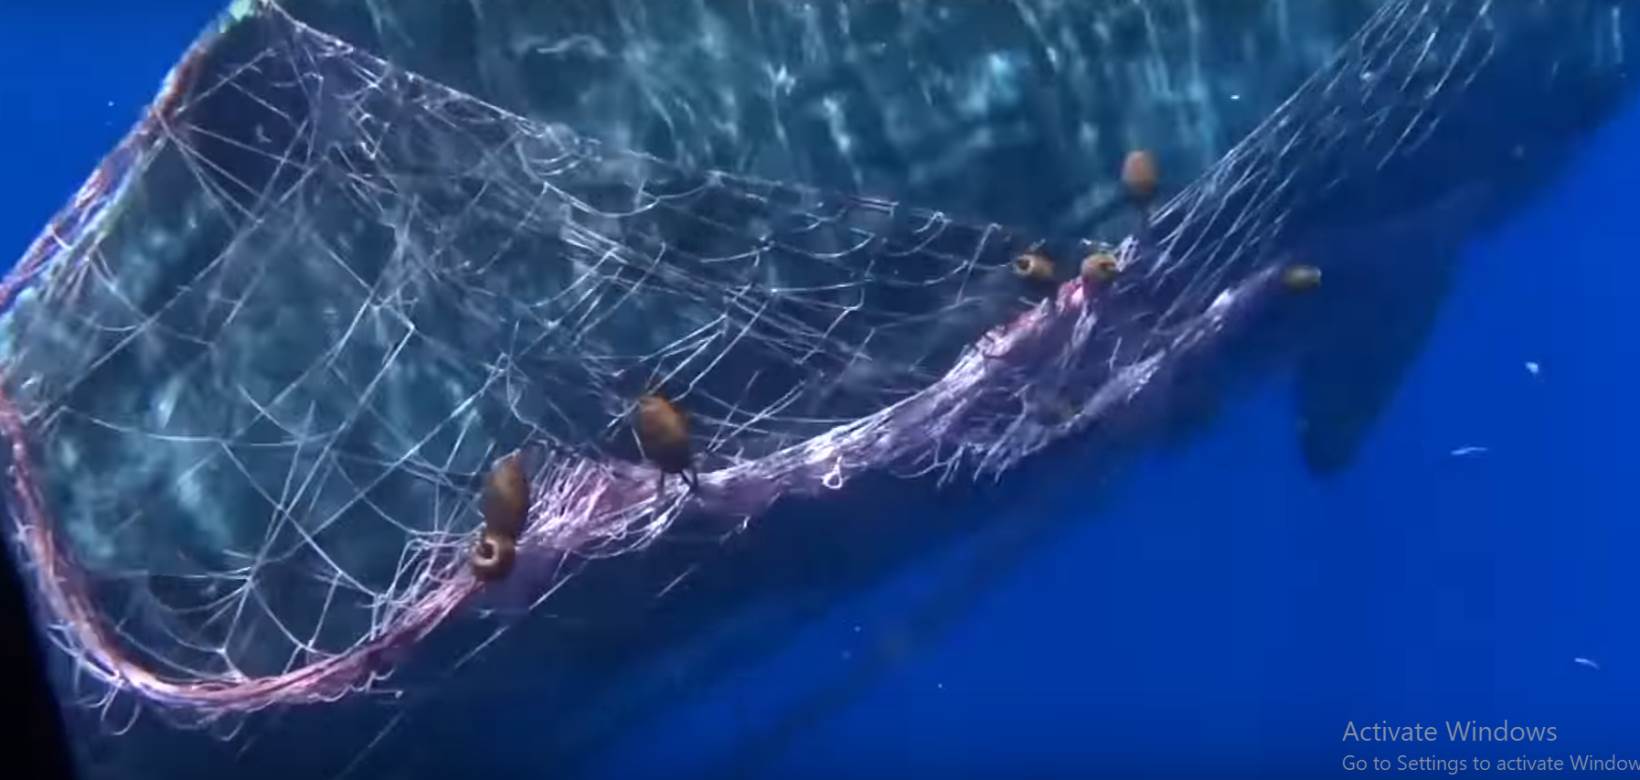  Pogledajte furiozan snimak spašavanja uznemirenog kita upetljanog u mreže 